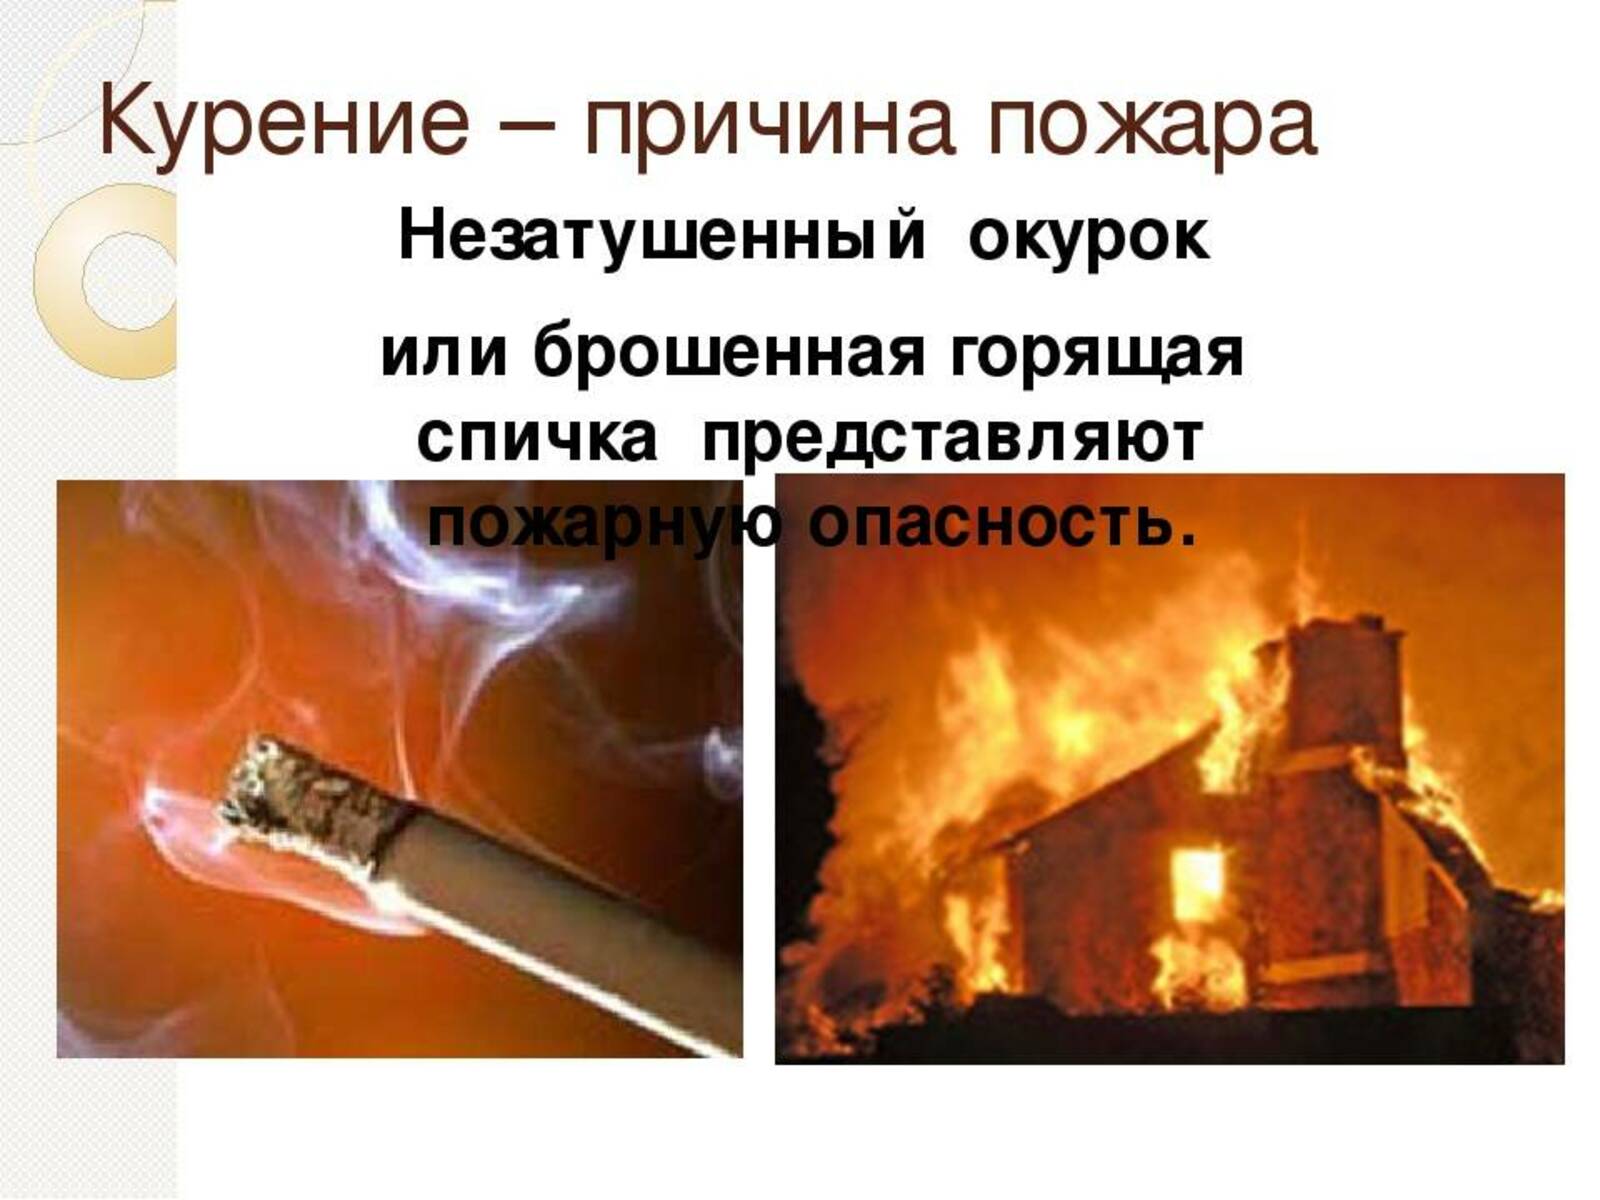 Курение может стать причиной пожара.